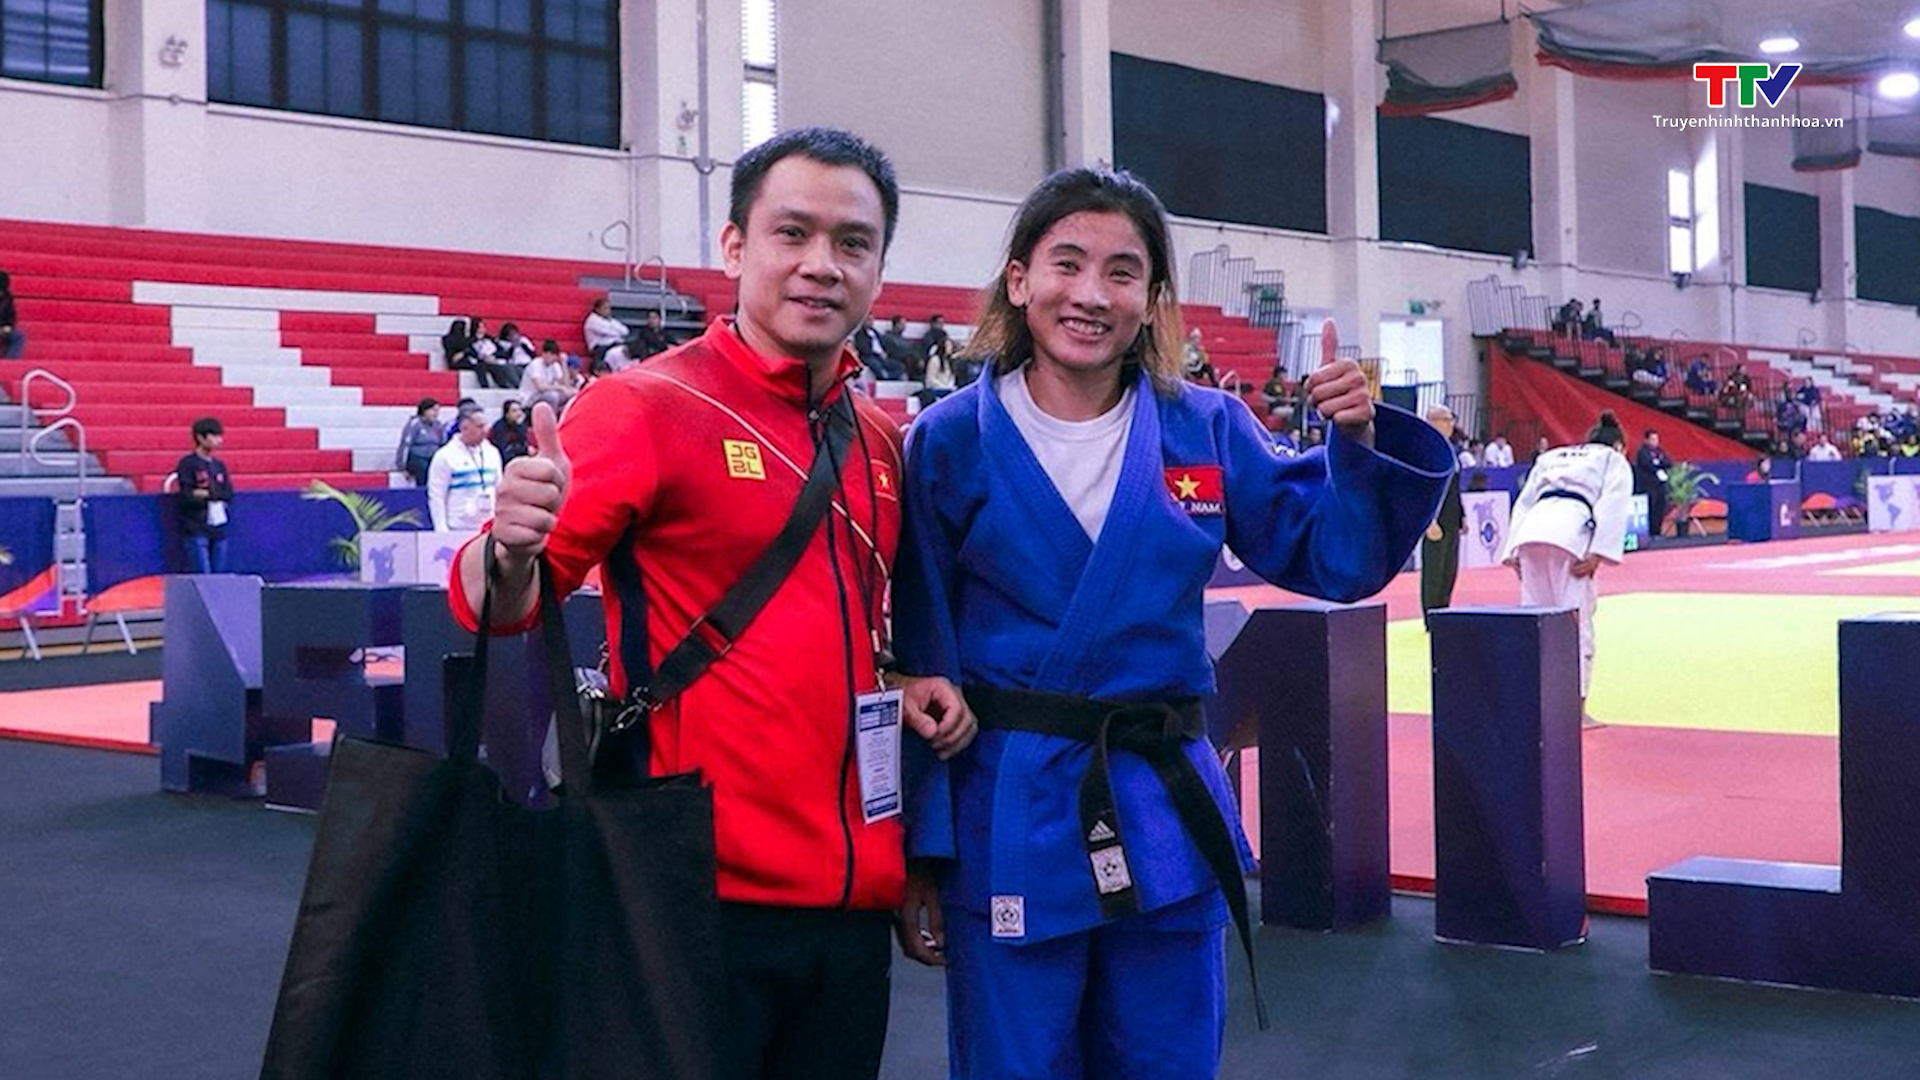 Võ sỹ môn Judo Hoàng Thị Tình được chào đón và tặng thưởng sau khi giành vé chính thức tham dự Olympic Paris 2024- Ảnh 4.